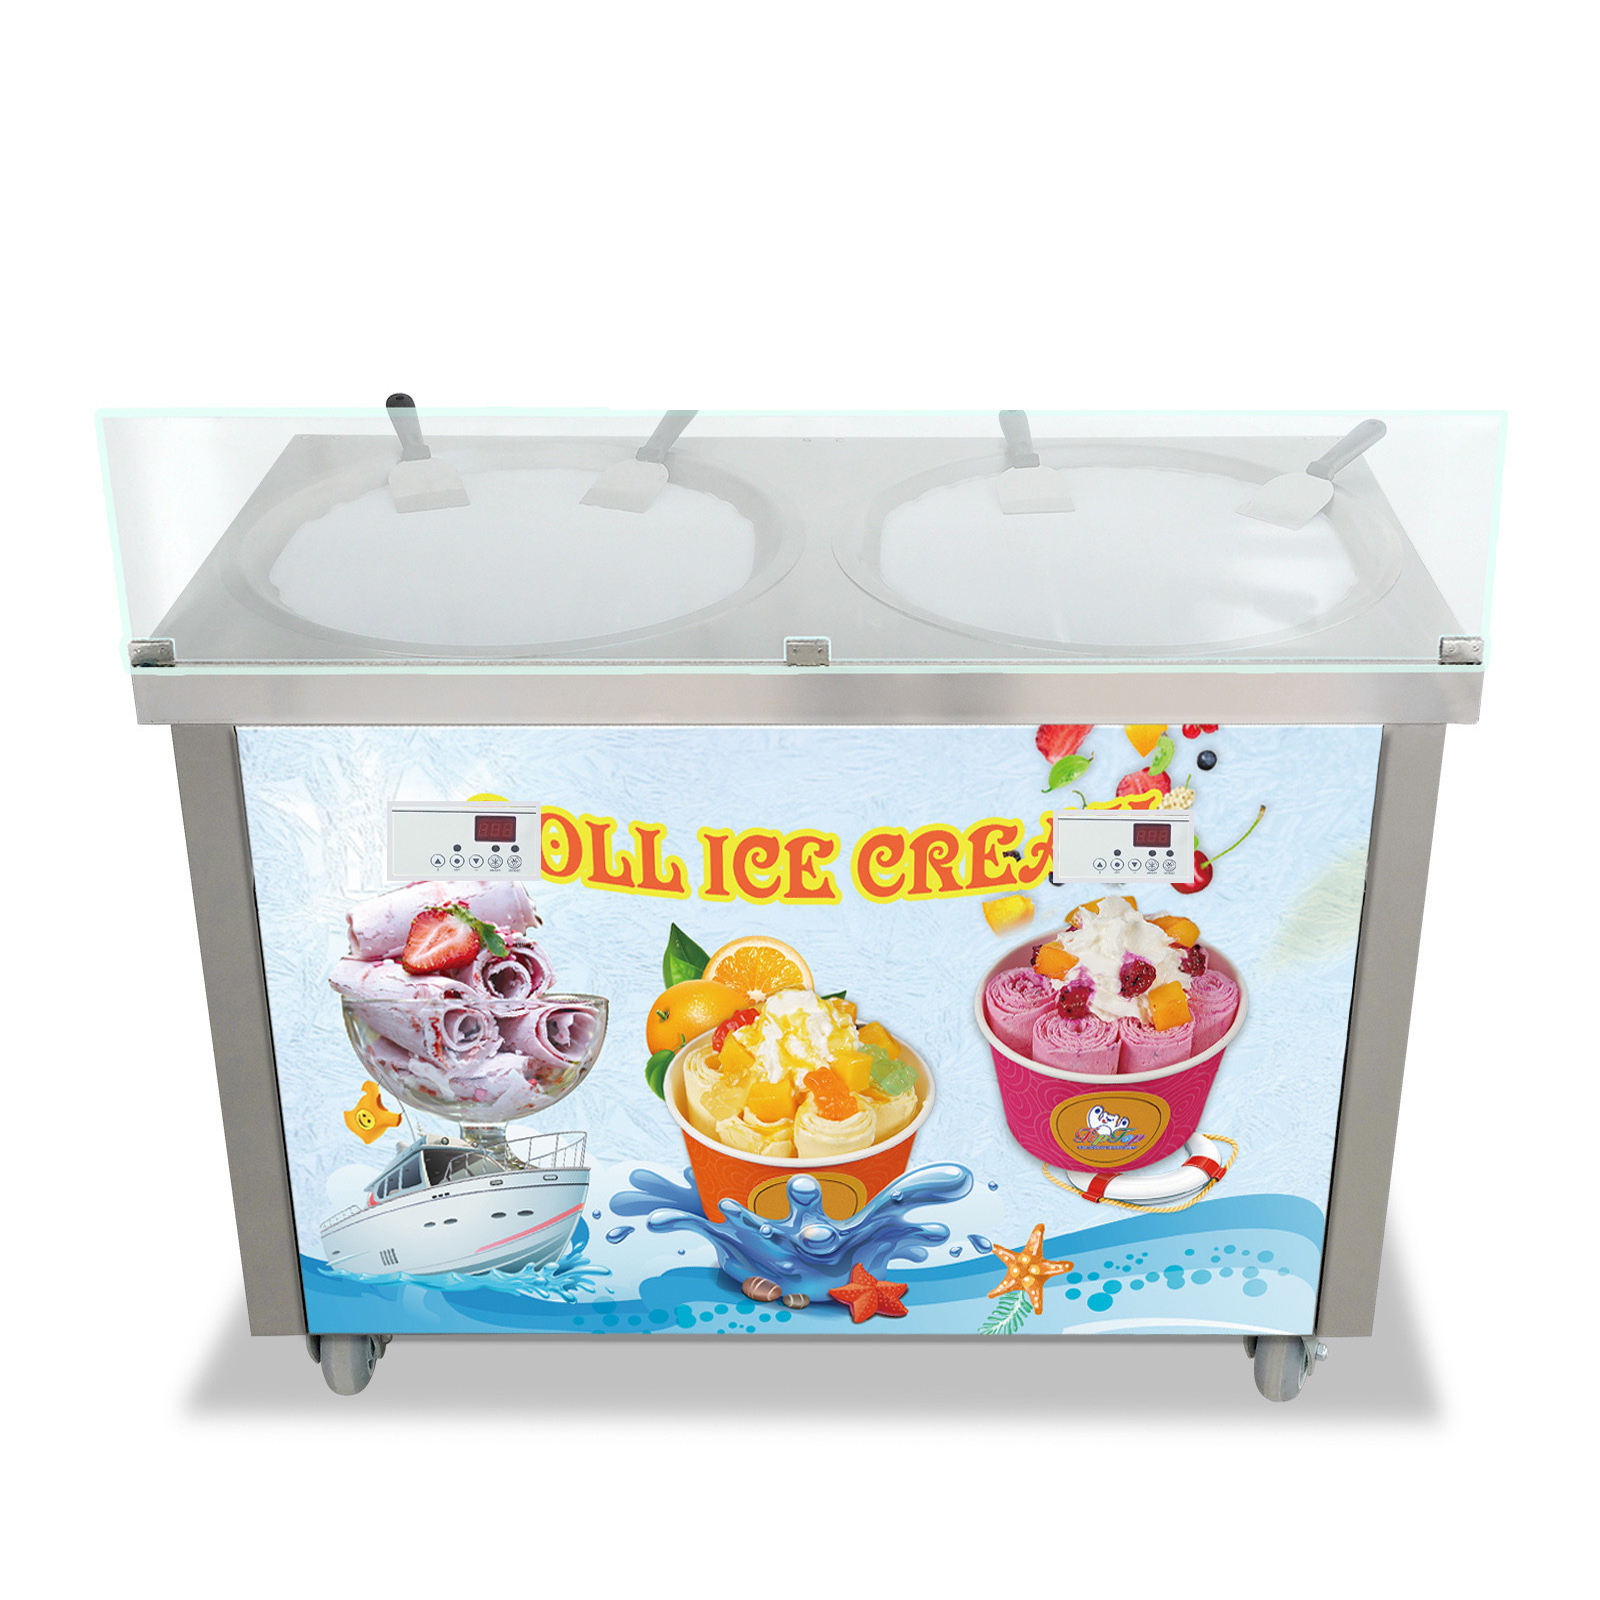 New Double Round Pan Fried Ice Cream Machine Rolled Ice Cream Maker Fry Ice Cream Roll Machine - Fried Ice Cream Machine - 5